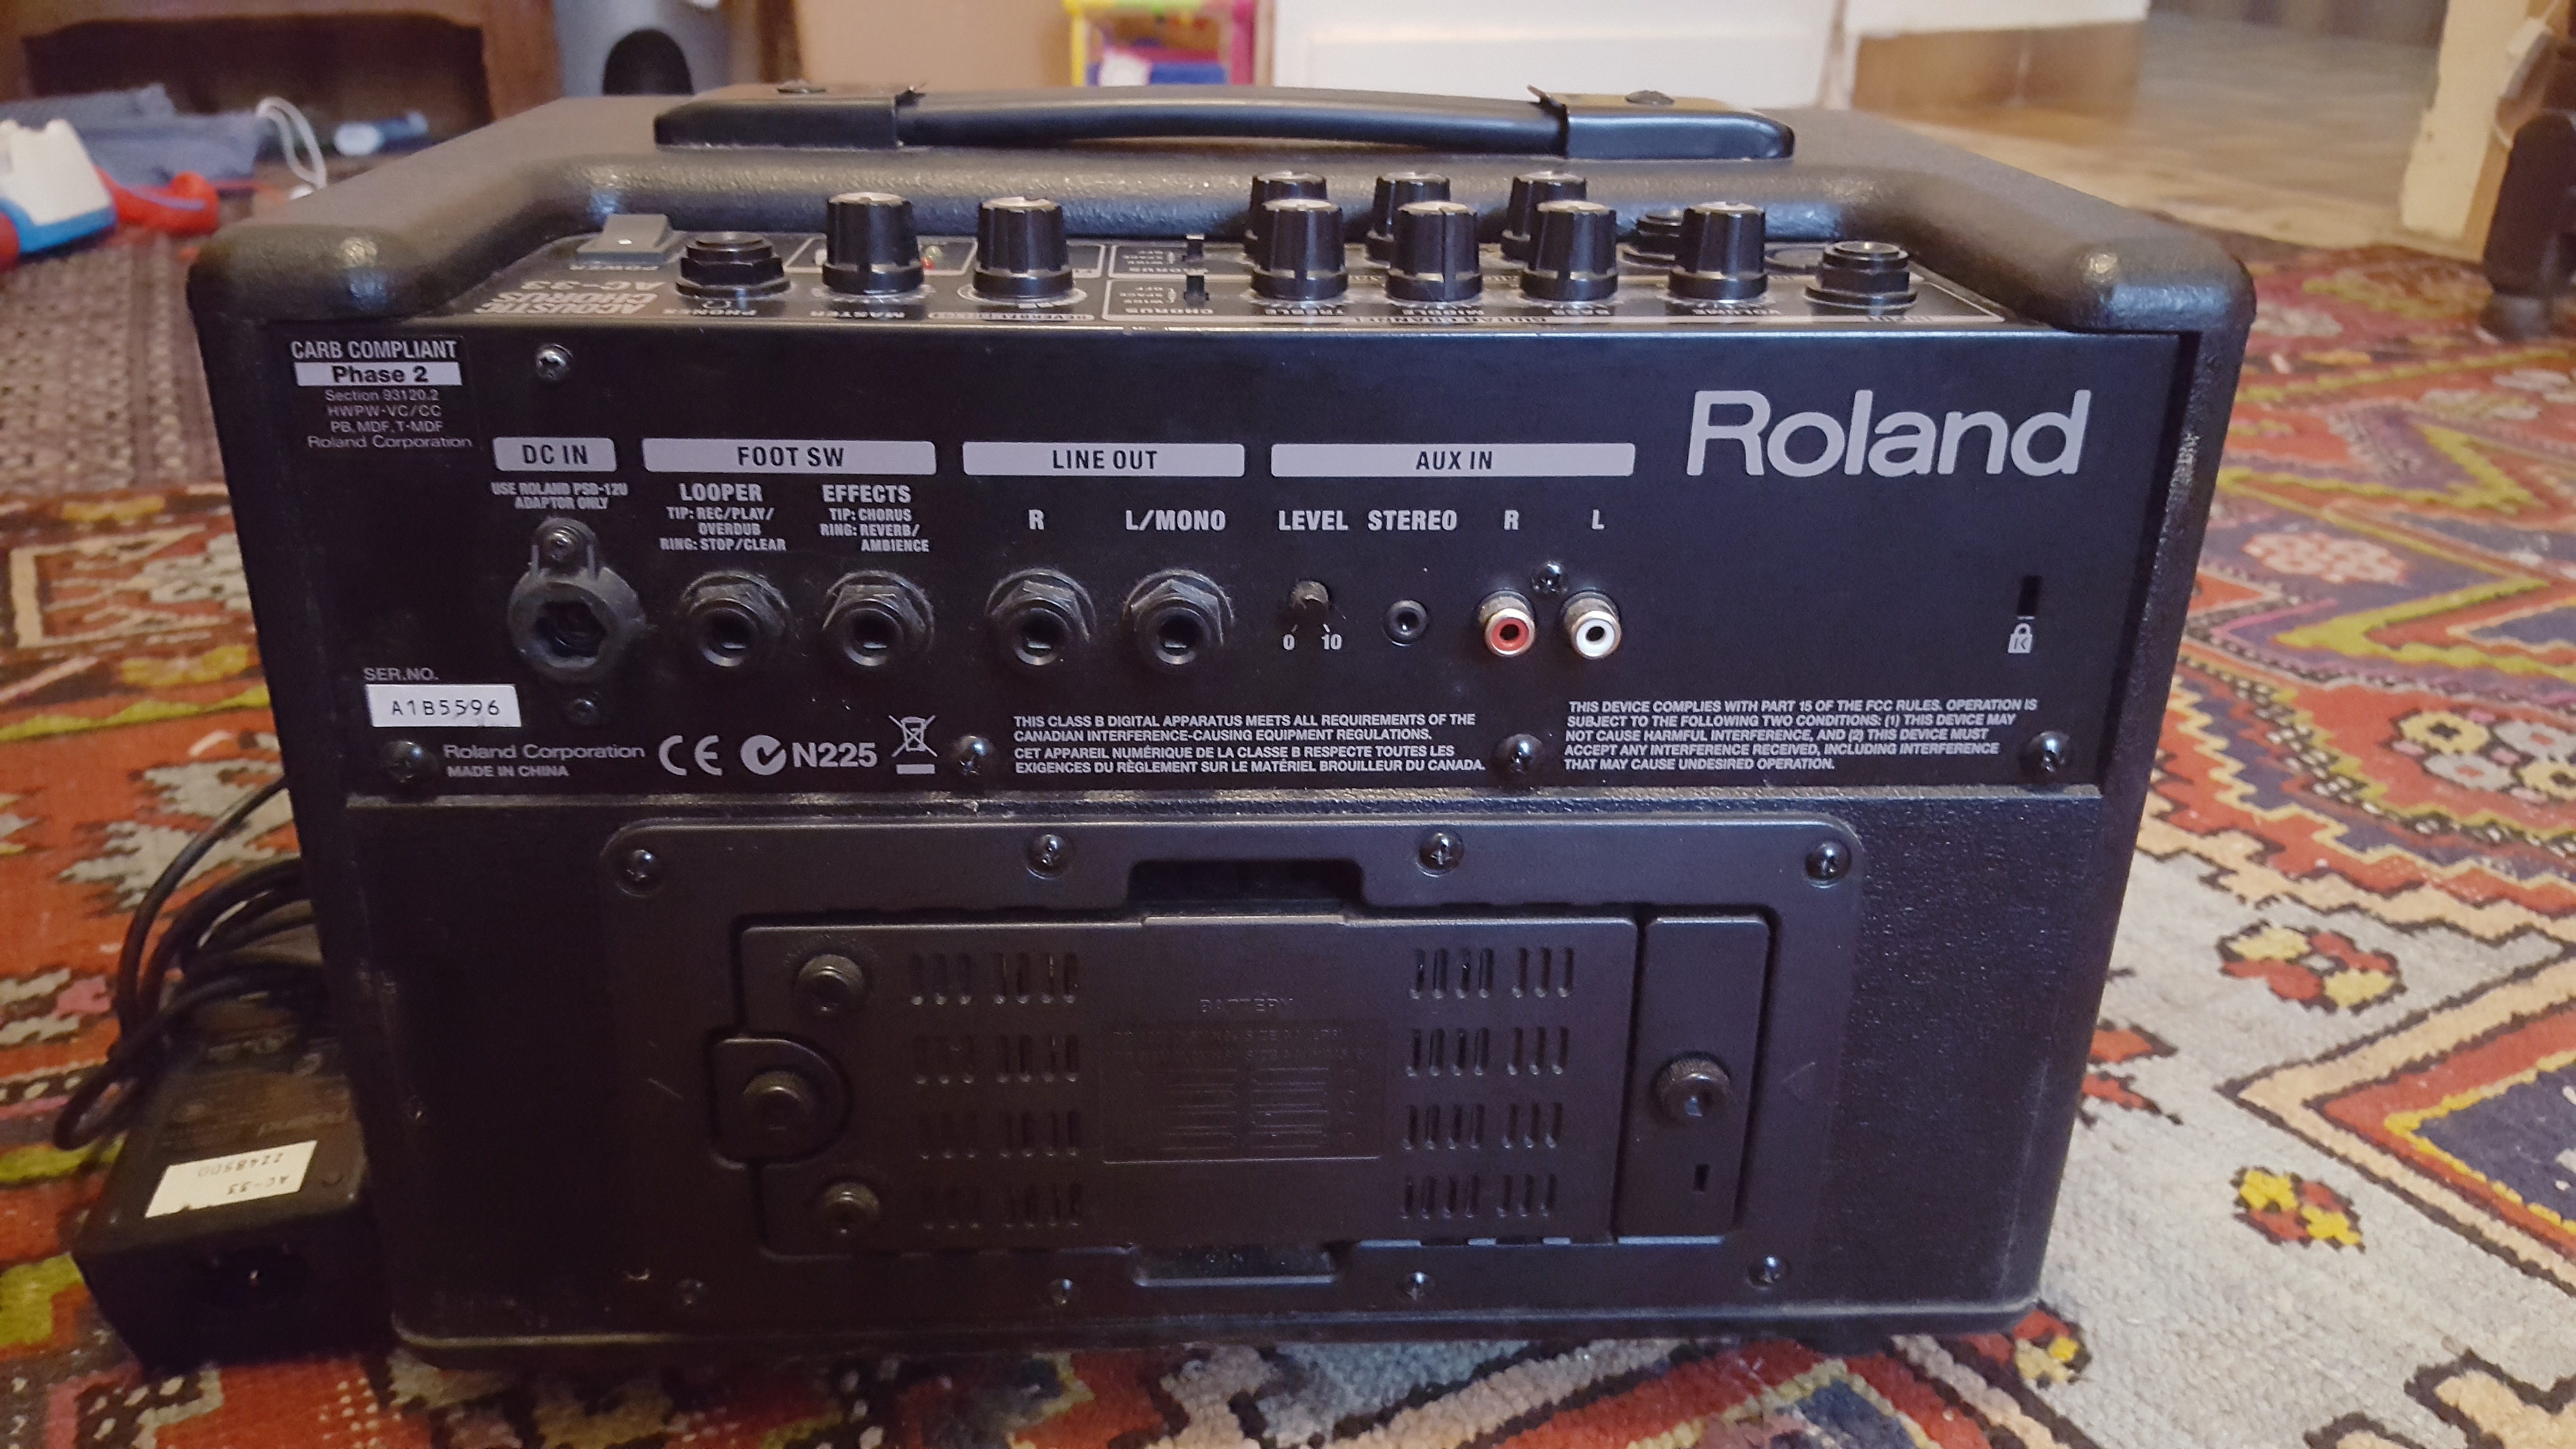 AC-33-RW - Roland AC-33-RW - Audiofanzine